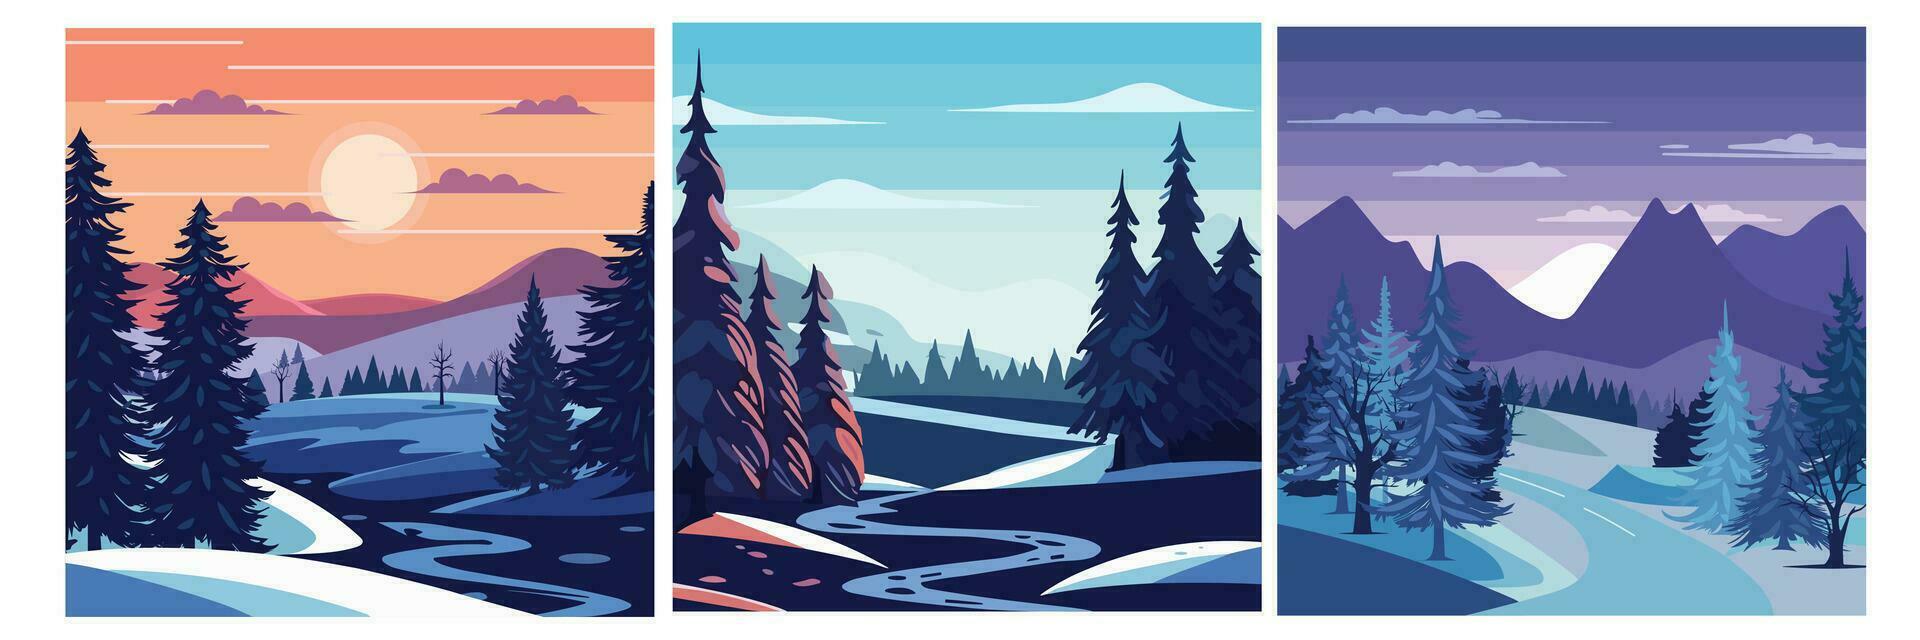 samling vinter- bakgrund. abstrakt vinter- landskap fyrkant sammansättning. vinter- se med copyspace. vektor illustration.